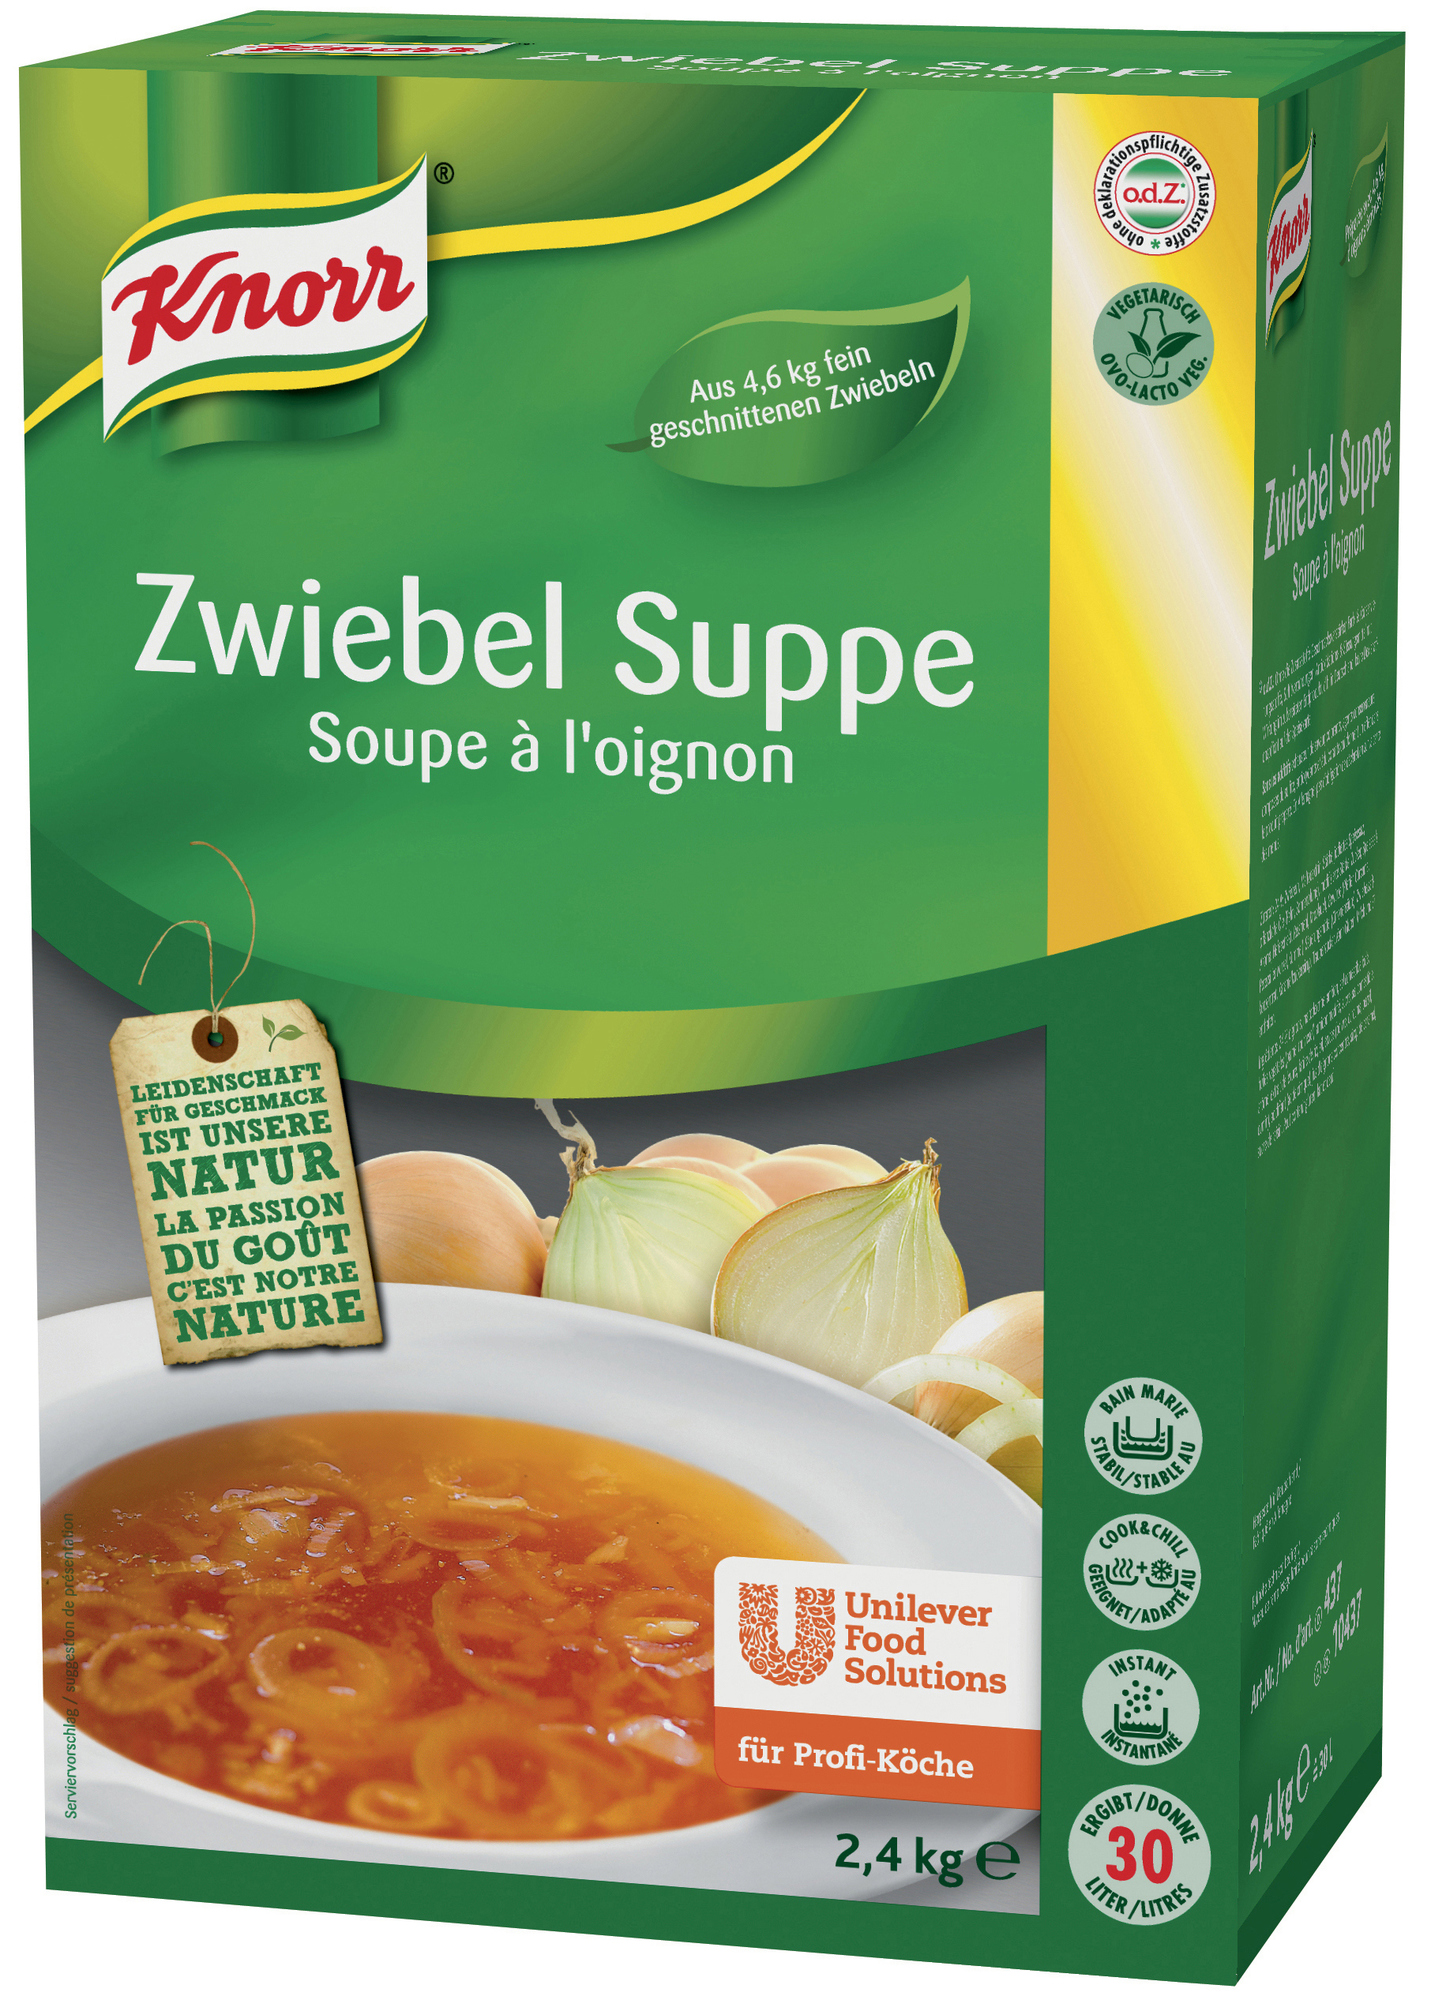 Zwiebel Suppe 2400g